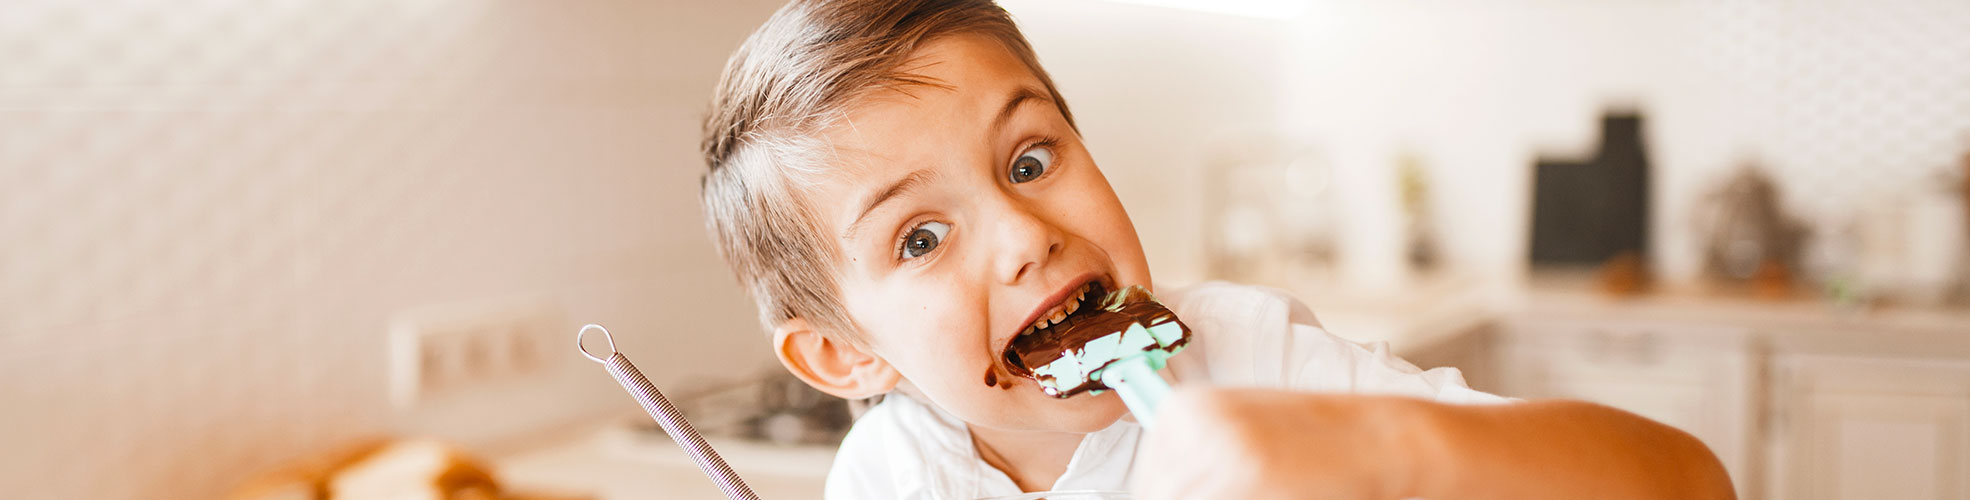 bambino mangia dolci